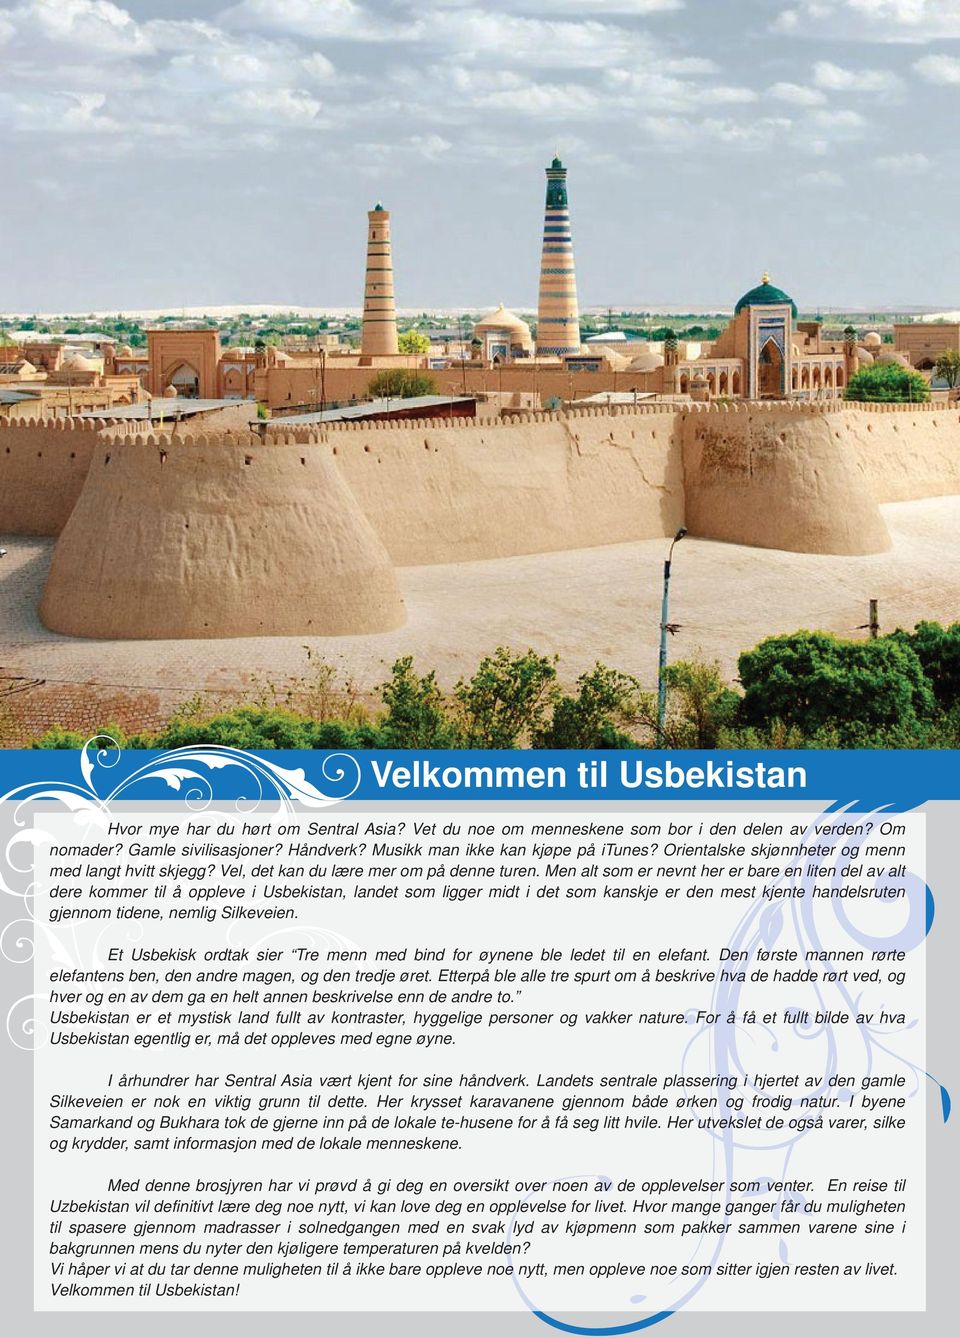 Men alt som er nevnt her er bare en liten del av alt dere kommer til å oppleve i Usbekistan, landet som ligger midt i det som kanskje er den mest kjente handelsruten gjennom tidene, nemlig Silkeveien.